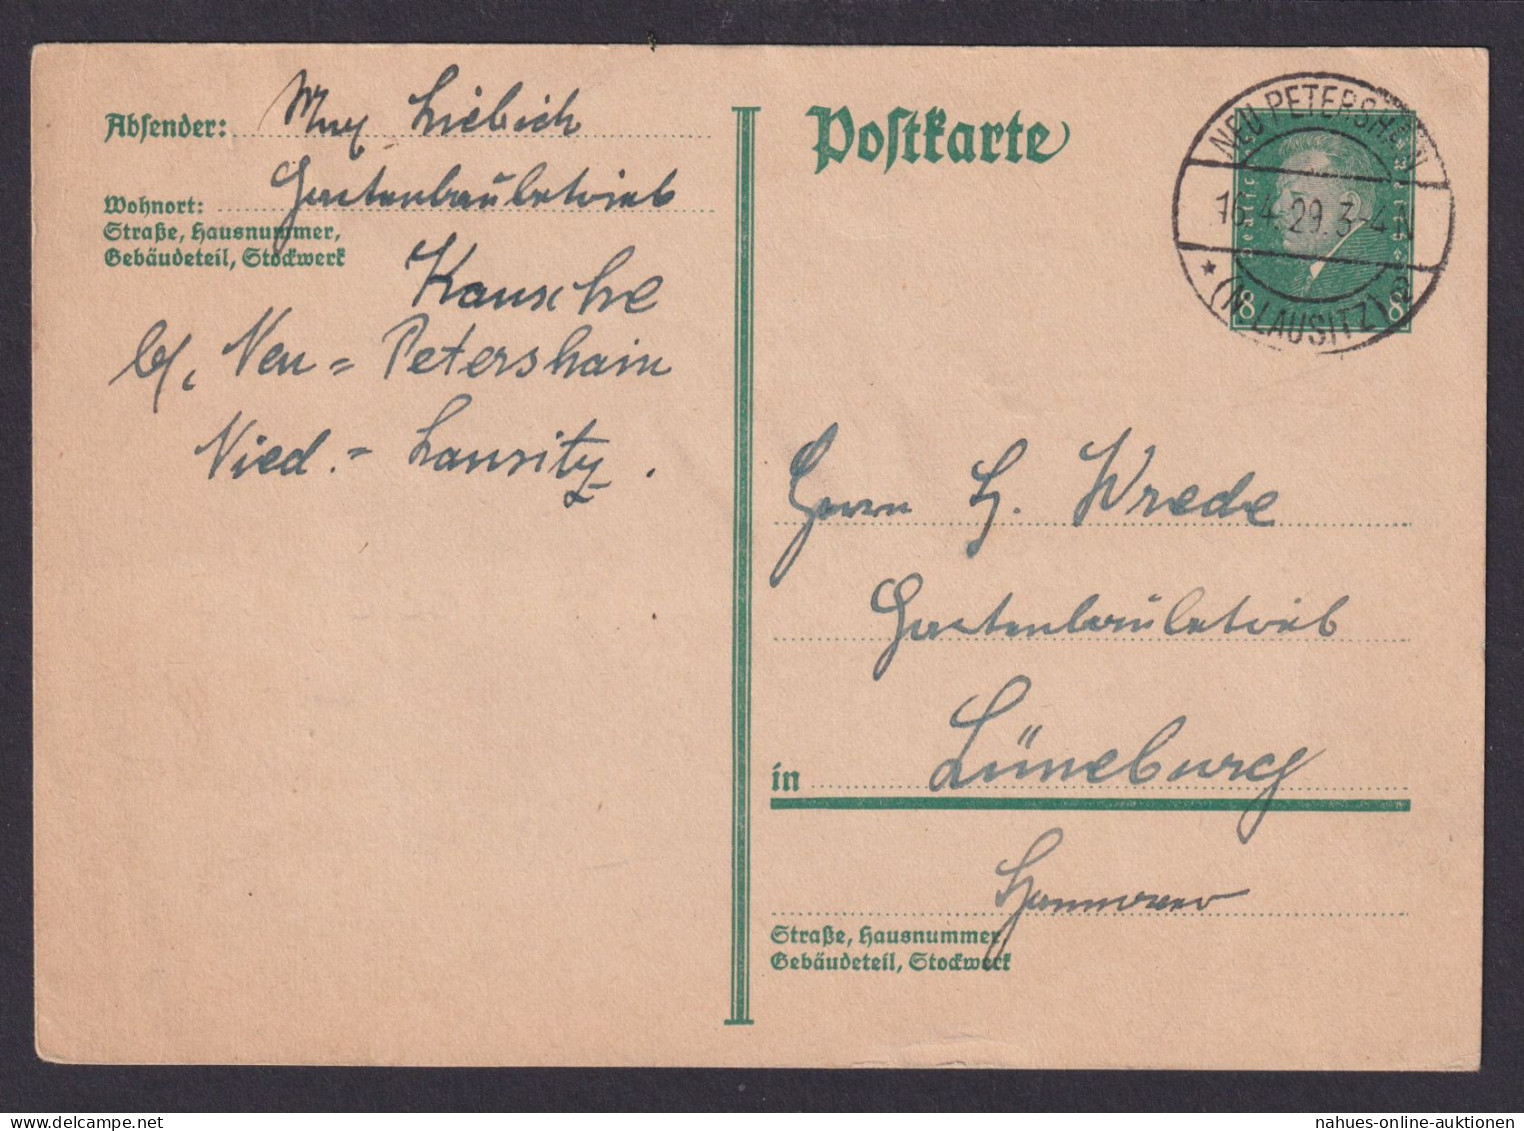 Neu Petrershain Brandenburg Deutsches Reich Ganzsache N. Lüneburg - Briefe U. Dokumente